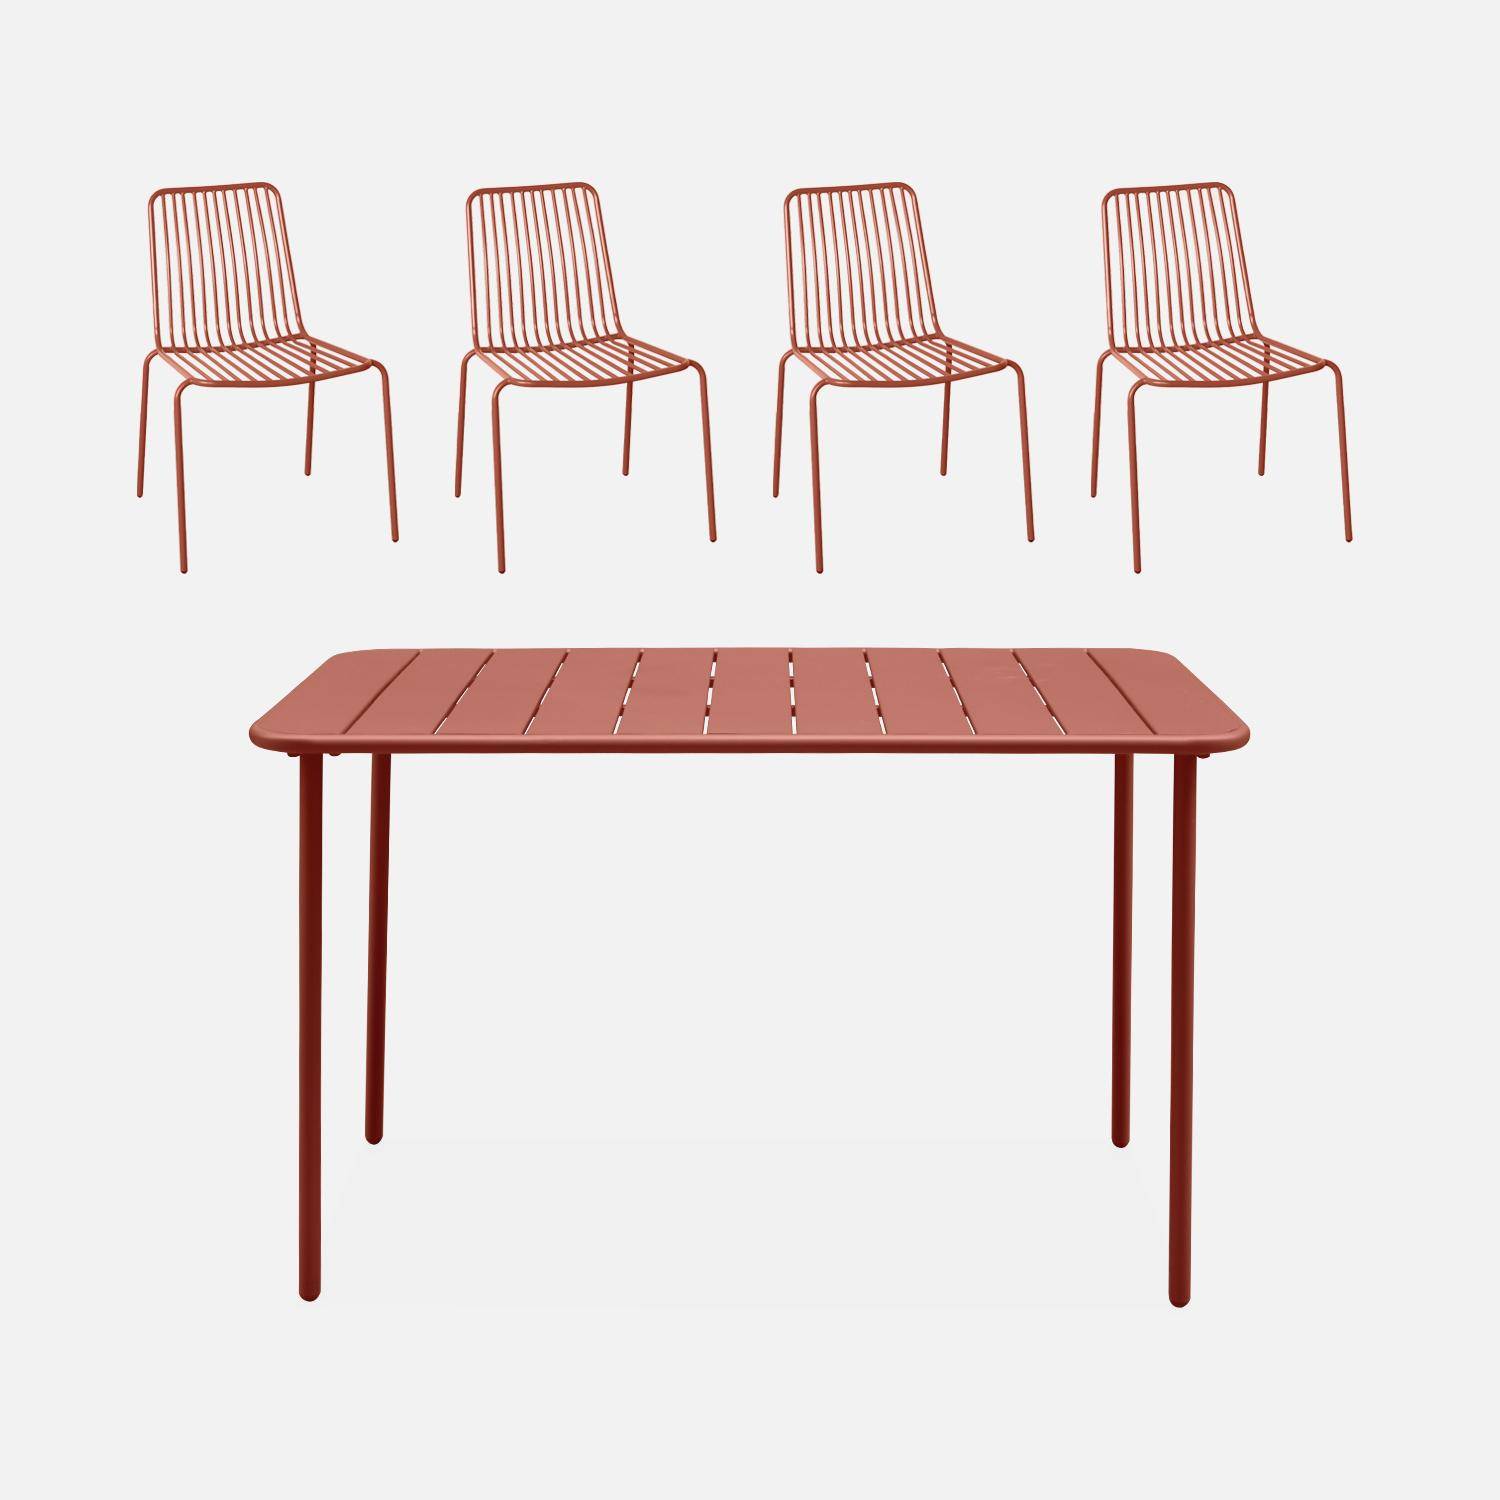 Table de jardin métal + 4 chaises terracotta empilables Photo1